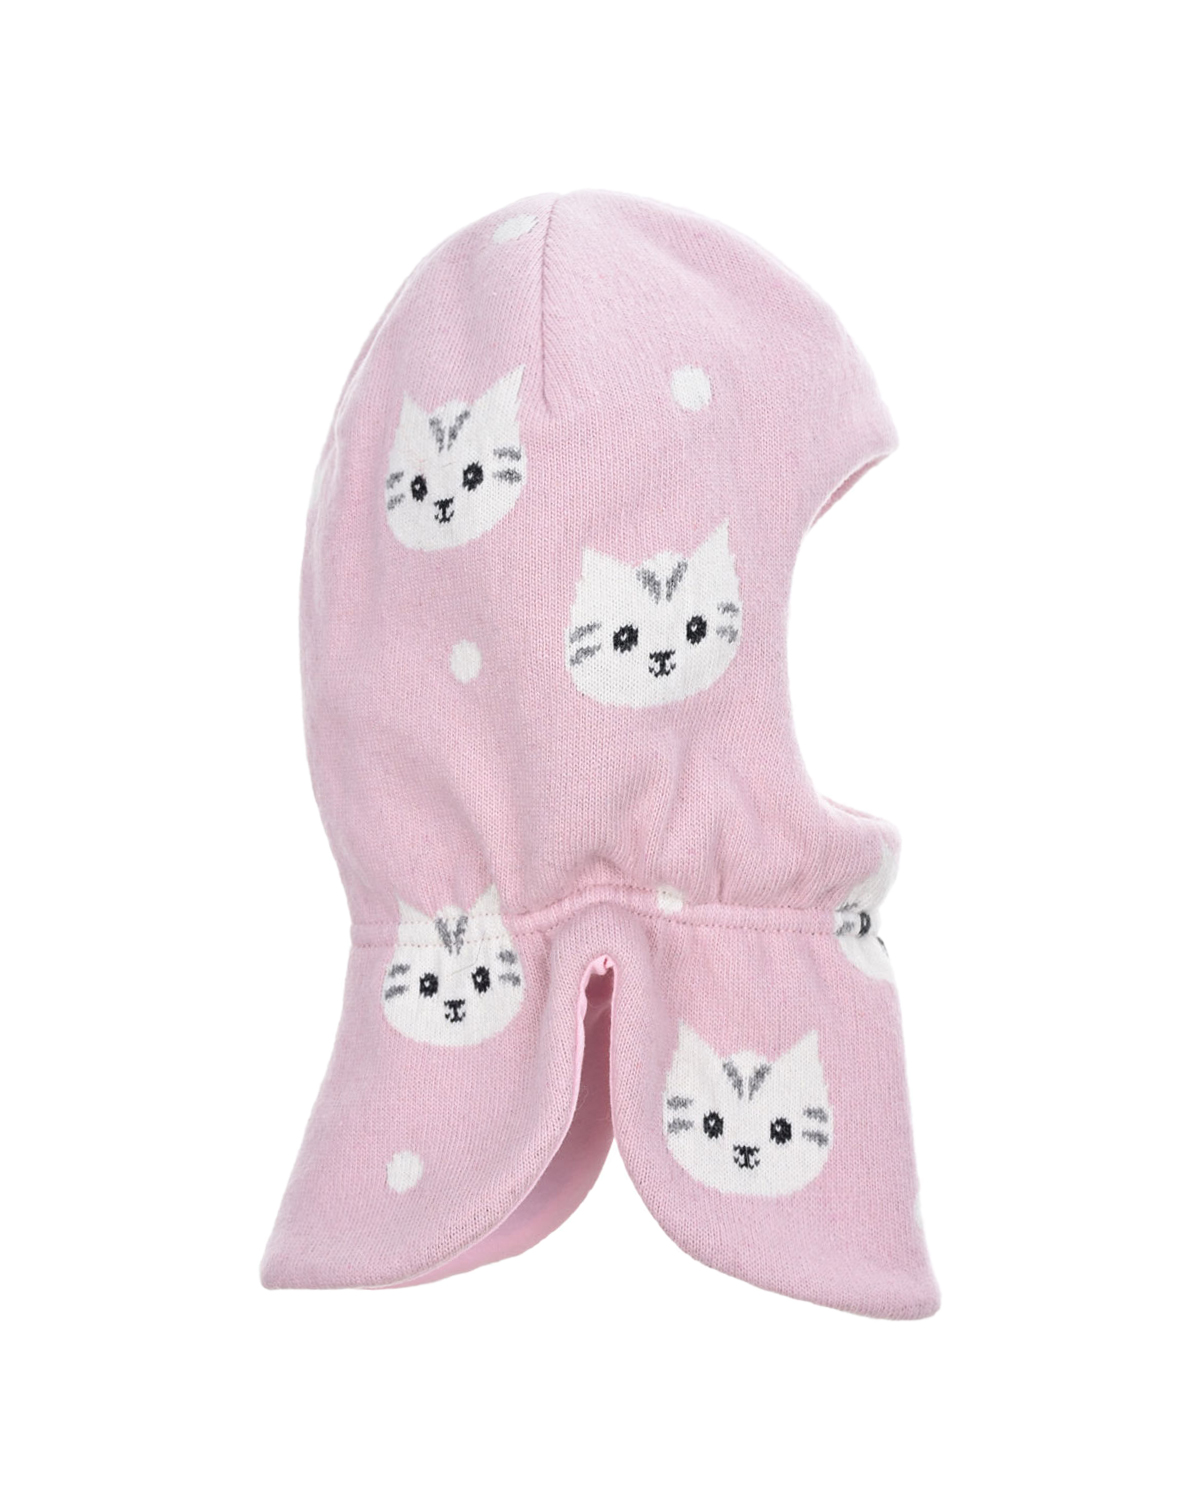 Розовая шапка-шлем с принтом "кошки" Chobi детская, размер 44/46, цвет розовый